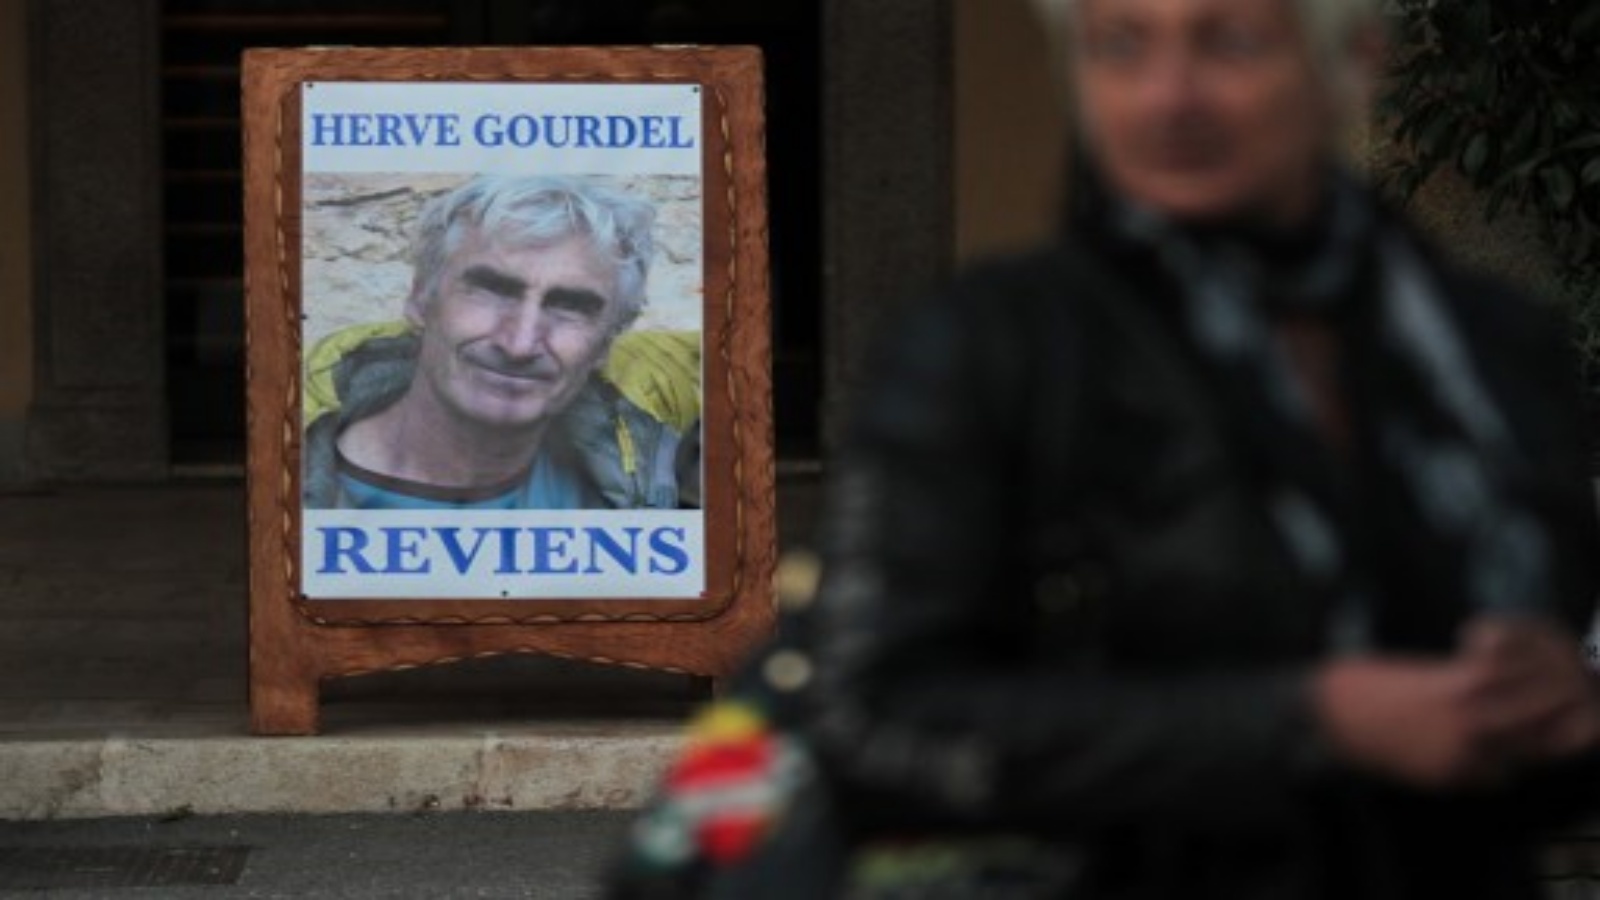 صورة التقطت في 23 سبتمبر 2014 ملصقًا يصور هيرفيه جورديل ، 55 عامًا ، وهو مرشد جبلي تم القبض عليه مساء 21 سبتمبر أثناء تجواله في منطقة القبائل الوعرة والغابات الكثيفة ، حيث تنشط القاعدة ، و قراءة 